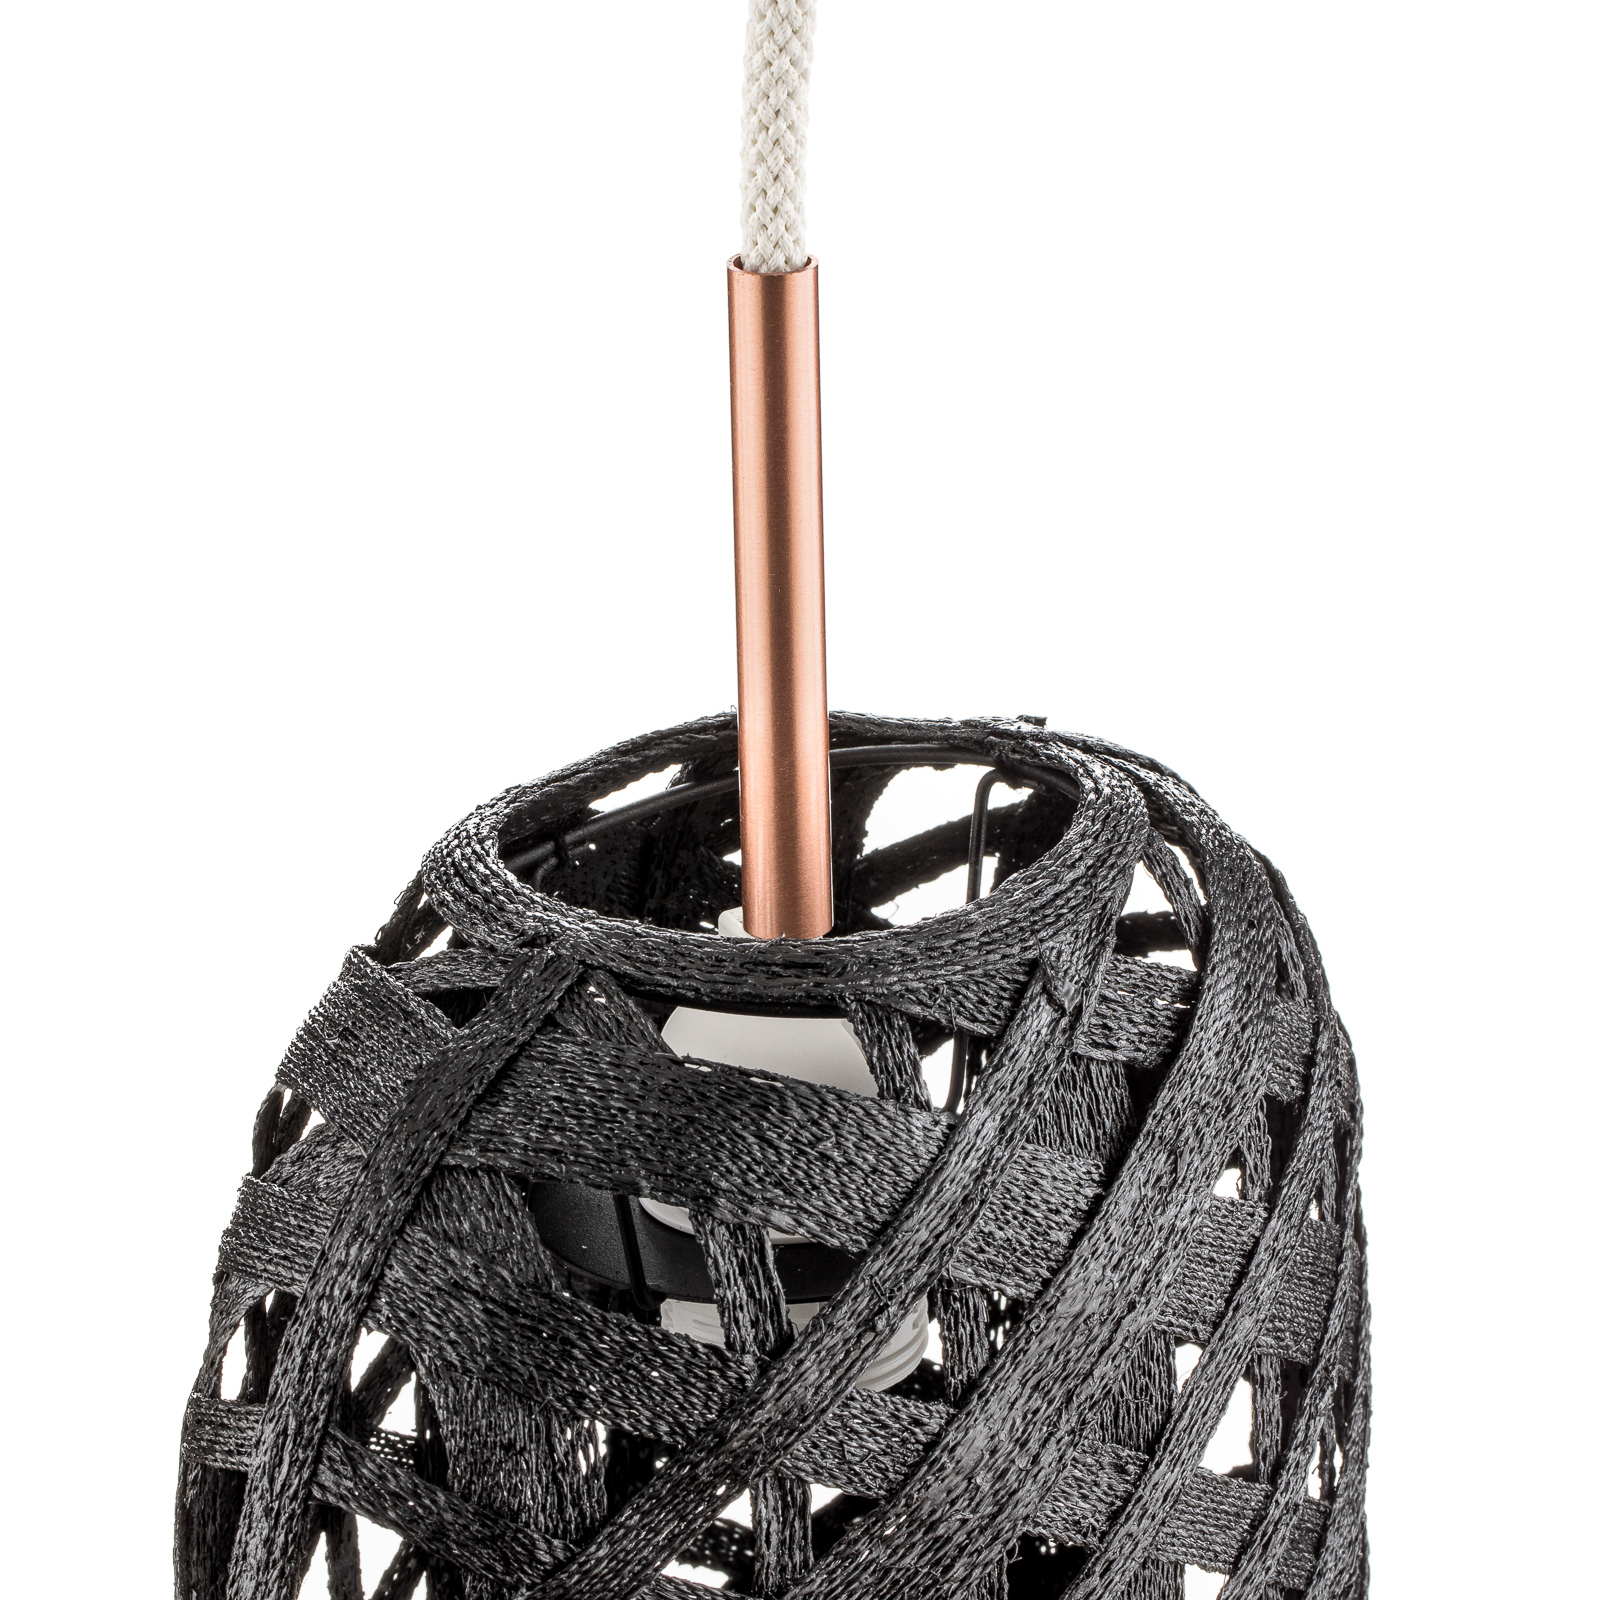 Forestier Capsule S suspension, 36 cm, noire